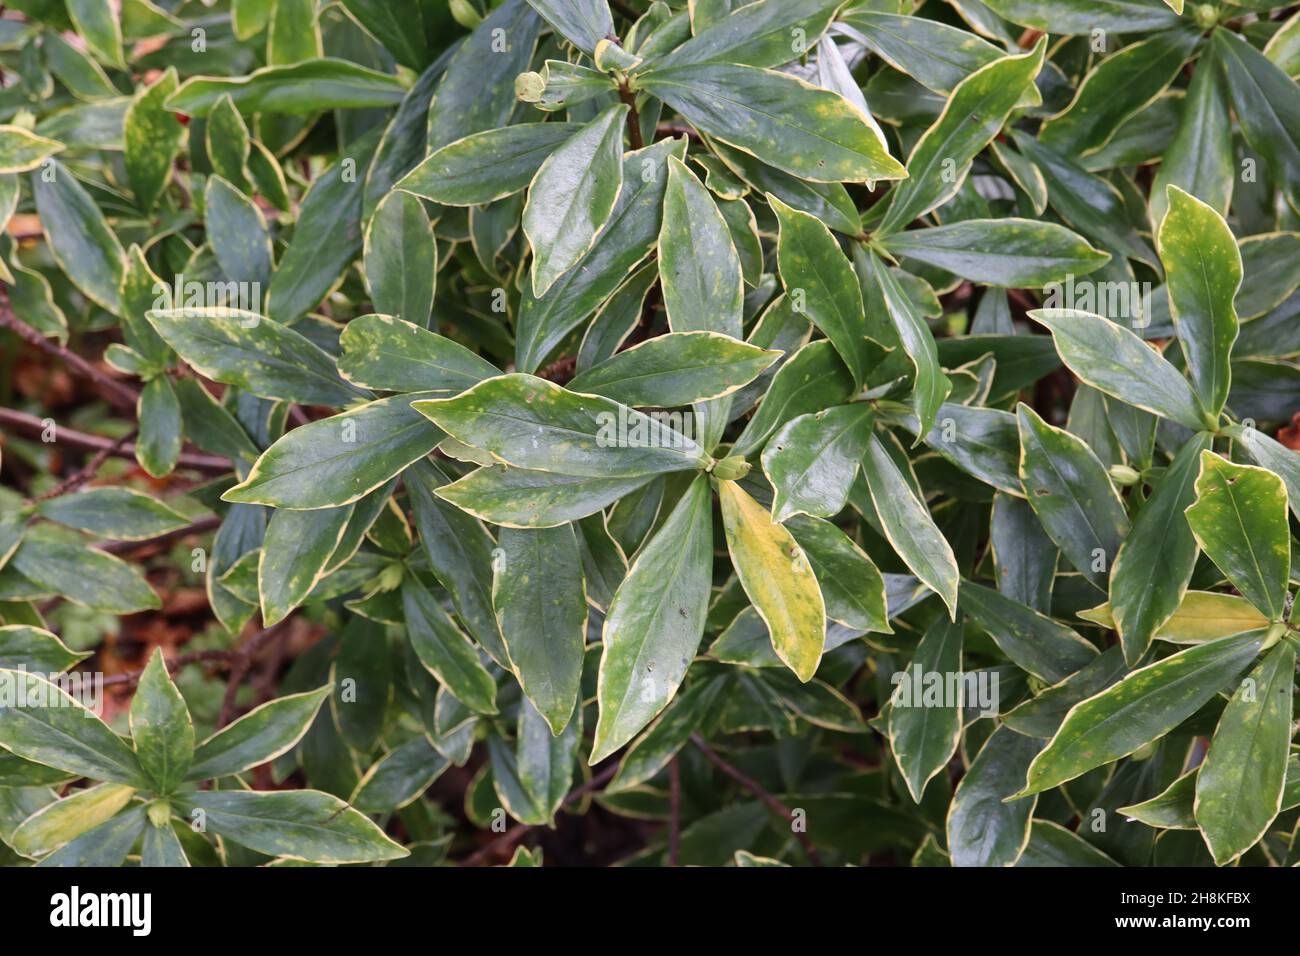 Illicium anisatum étoile japonaise anis – feuilles vert foncé brillantes en forme de lance avec marges jaunes, novembre, Angleterre, Royaume-Uni Banque D'Images